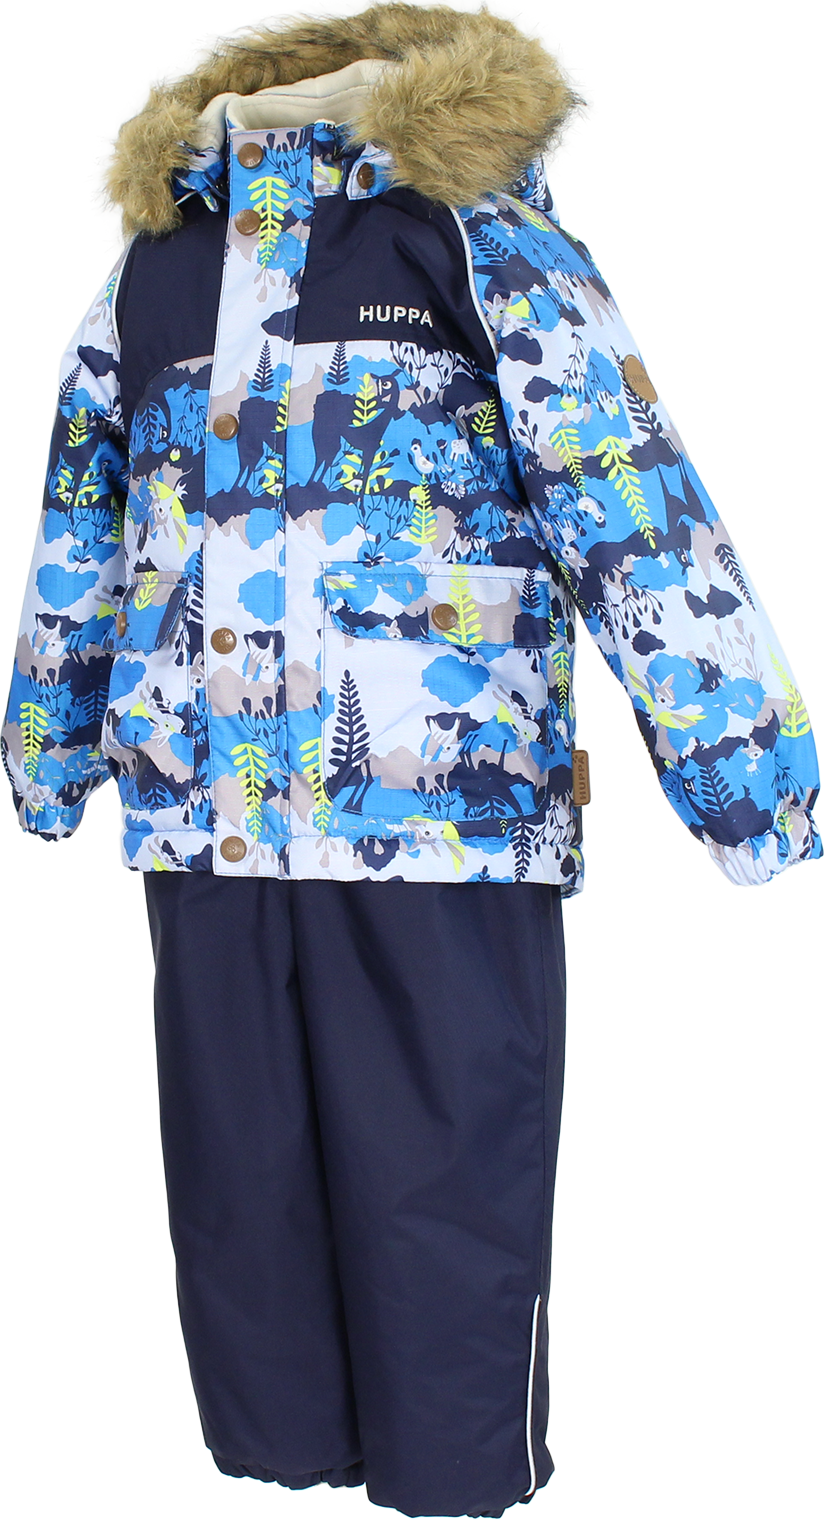 Комплект верхней одежды Huppa AIDAN, размер 086, синий, голубой